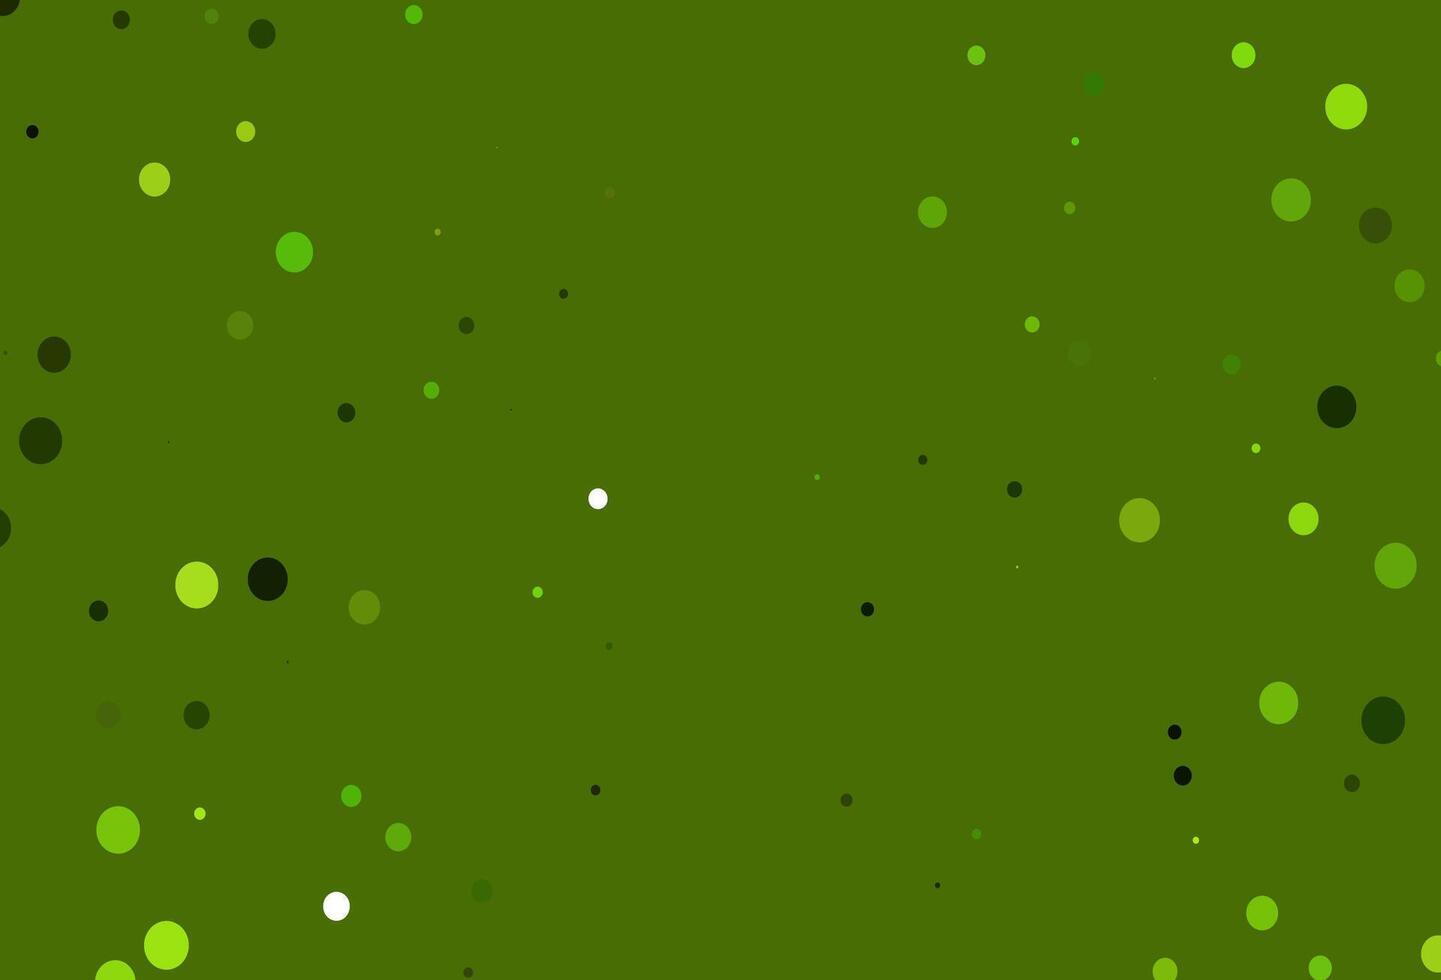 ljusgrön, gul vektorstruktur med skivor. vektor